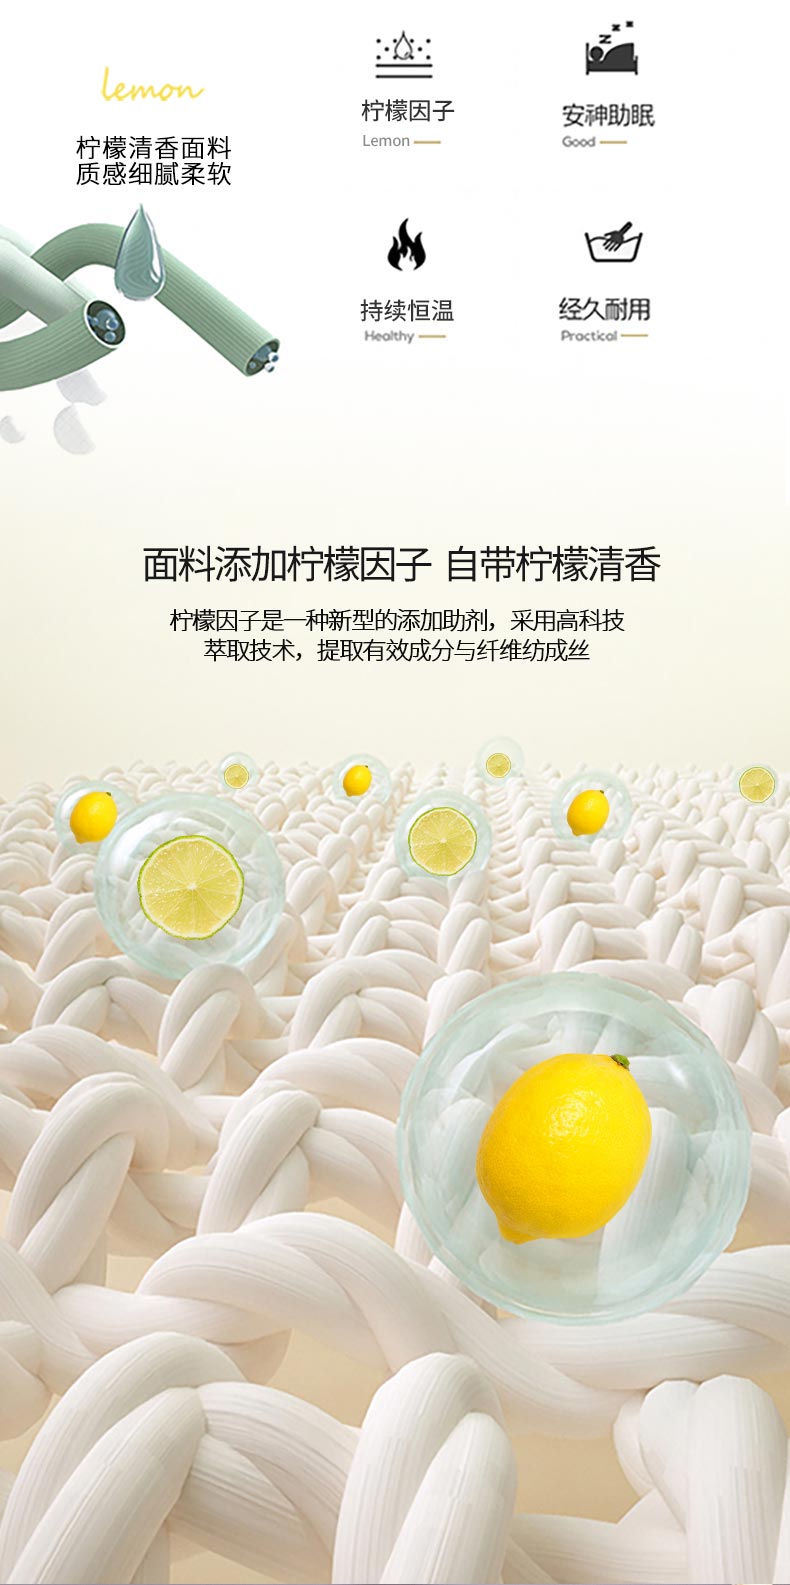 柠檬清香大豆被_03.jpg